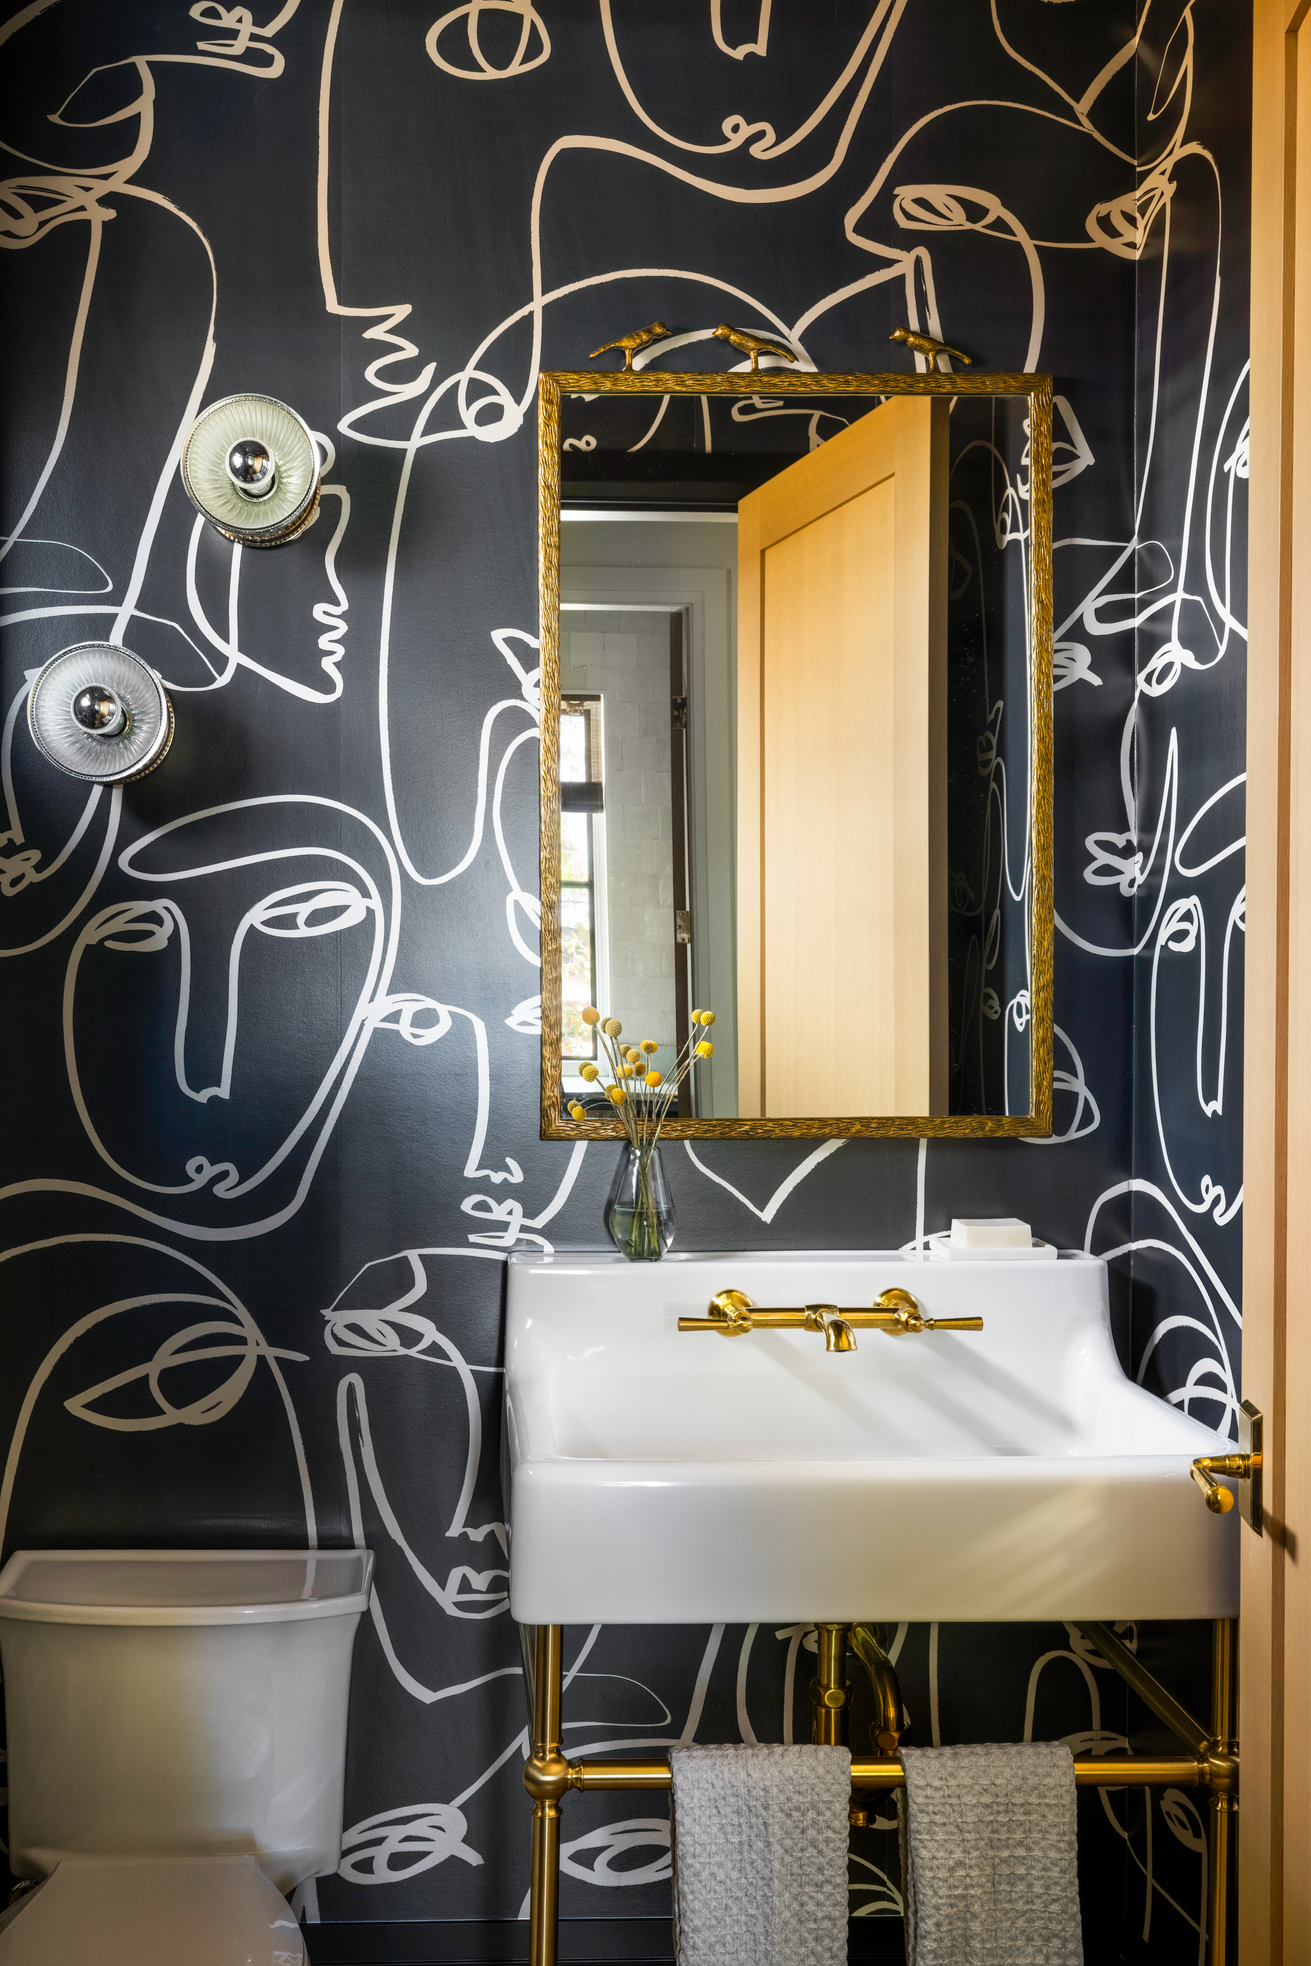 Bathroom wallpapers : Wallpaper Direct